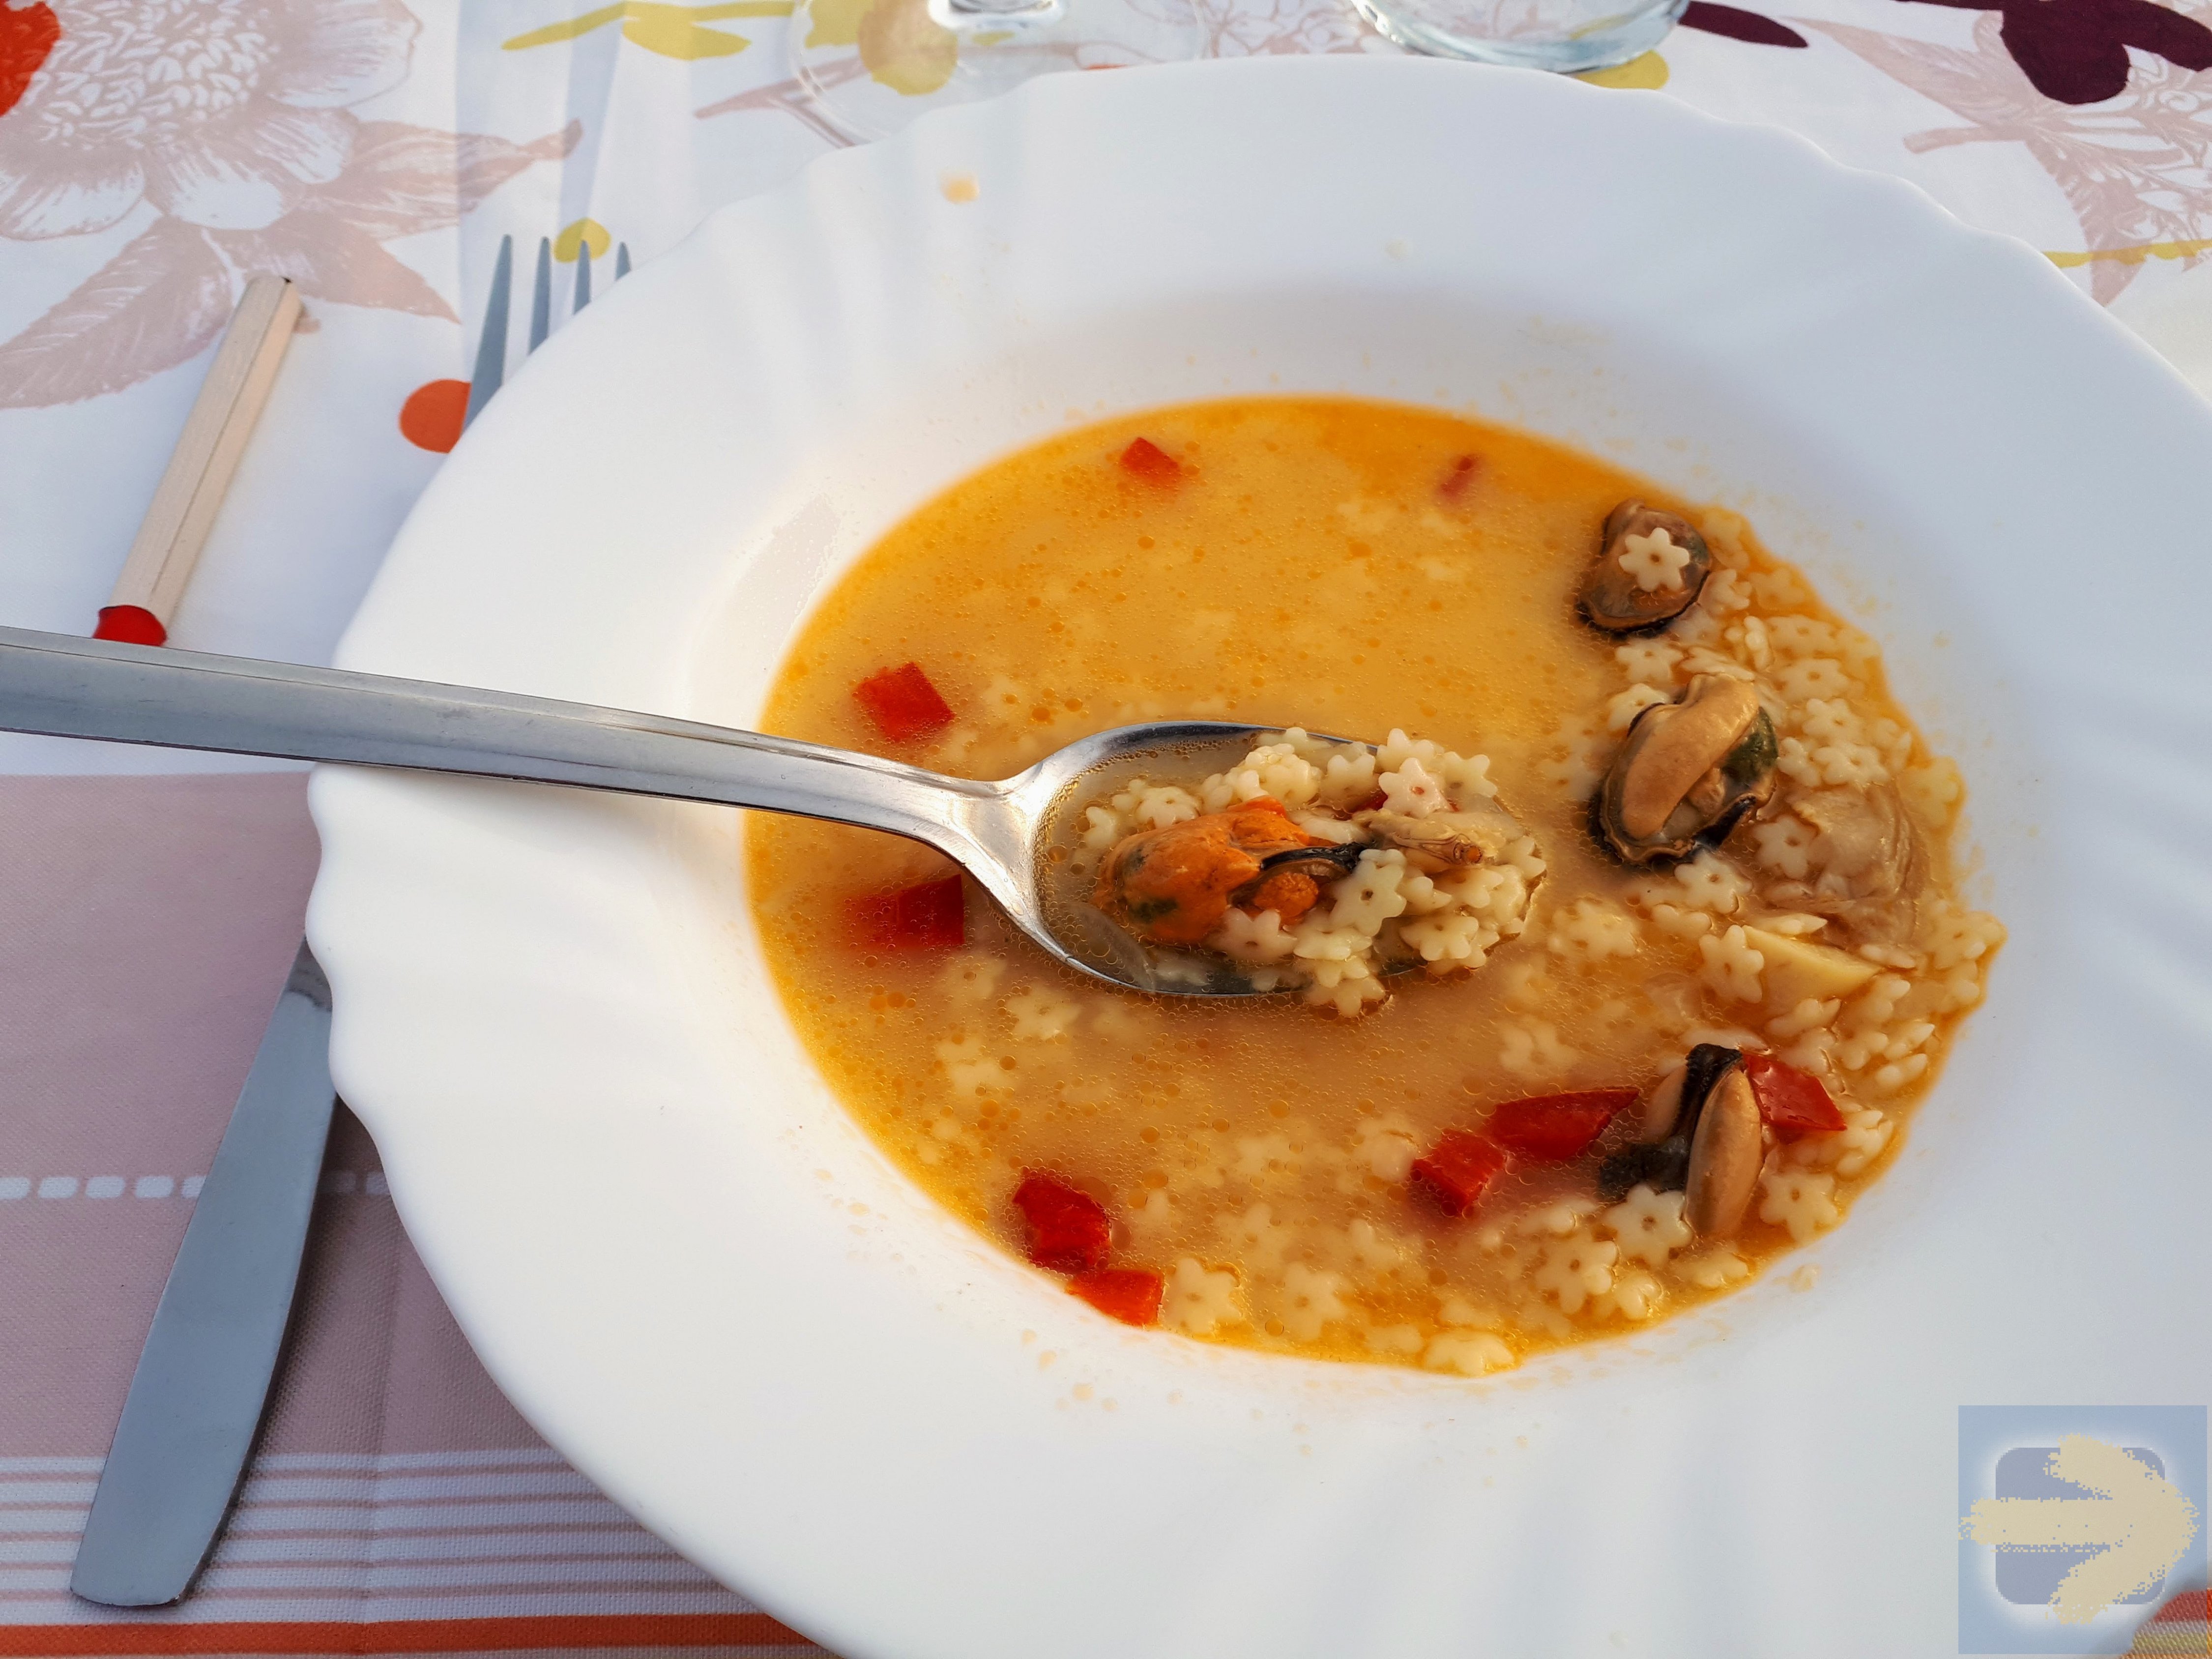 VdlP:  The honest soup when it is best